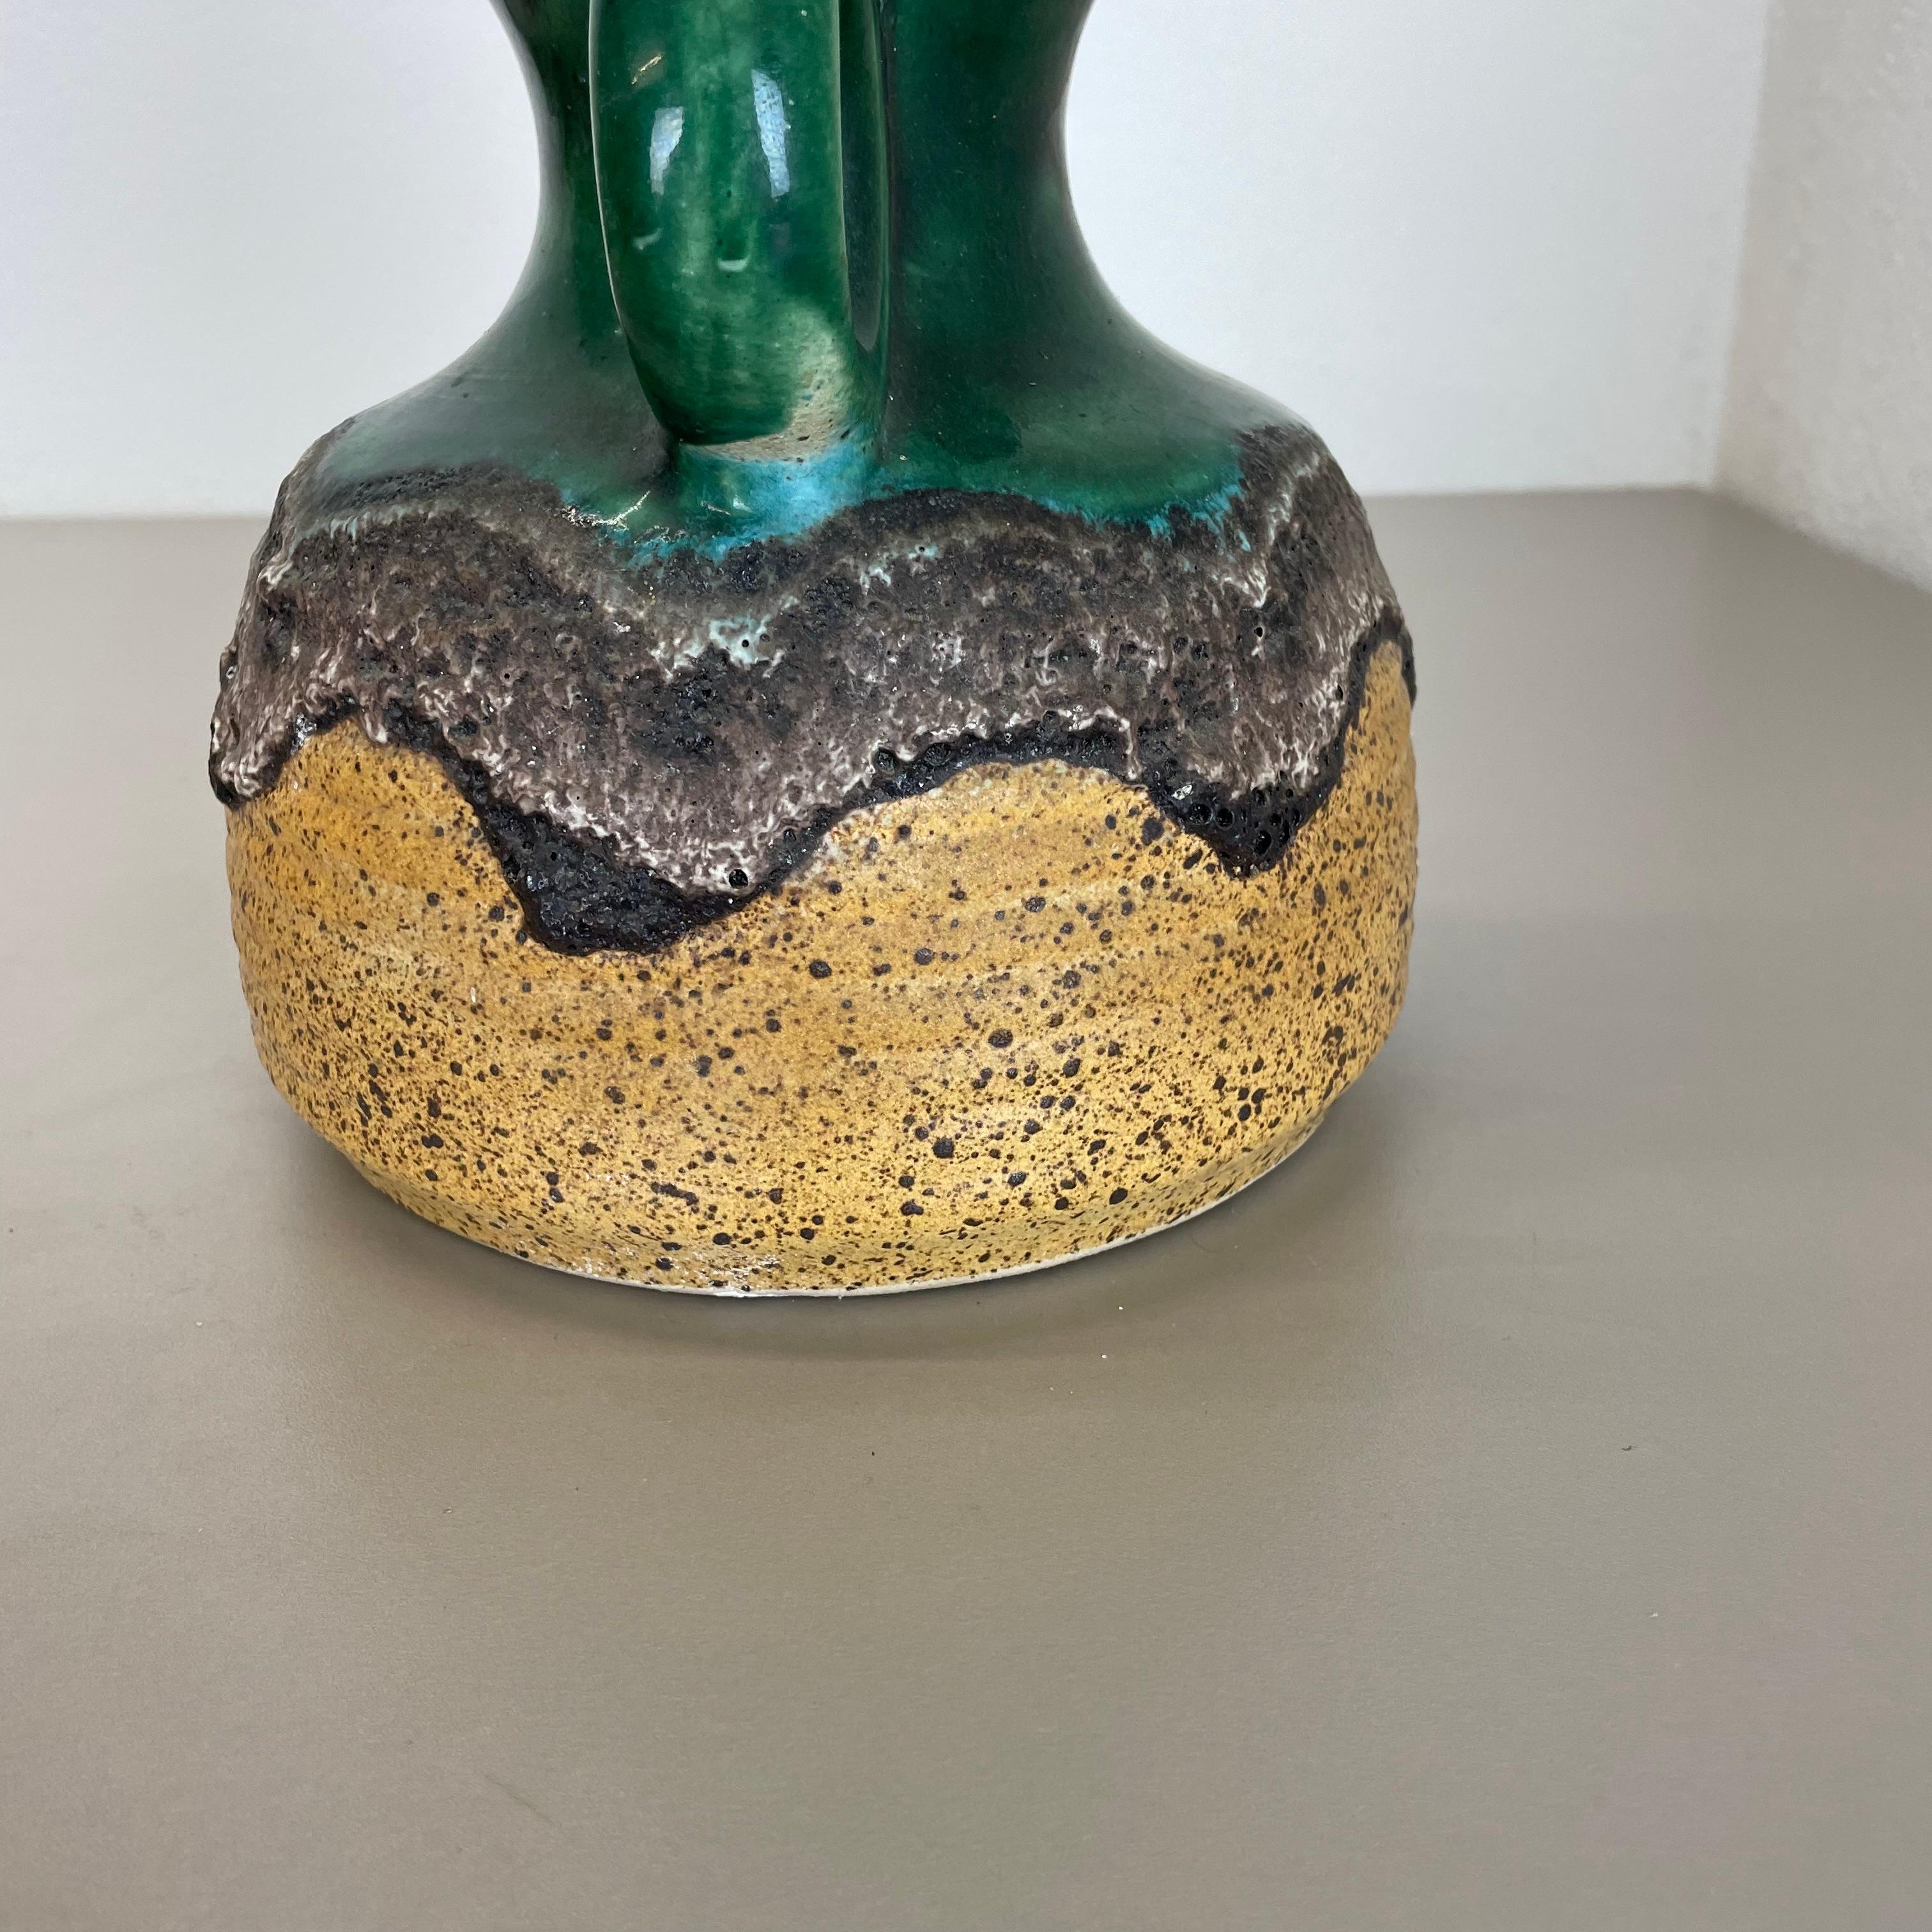 Rare Green Brutalist Fat Lava Ceramic Vases by Dümler and Breiden Germany, 1970s For Sale 5